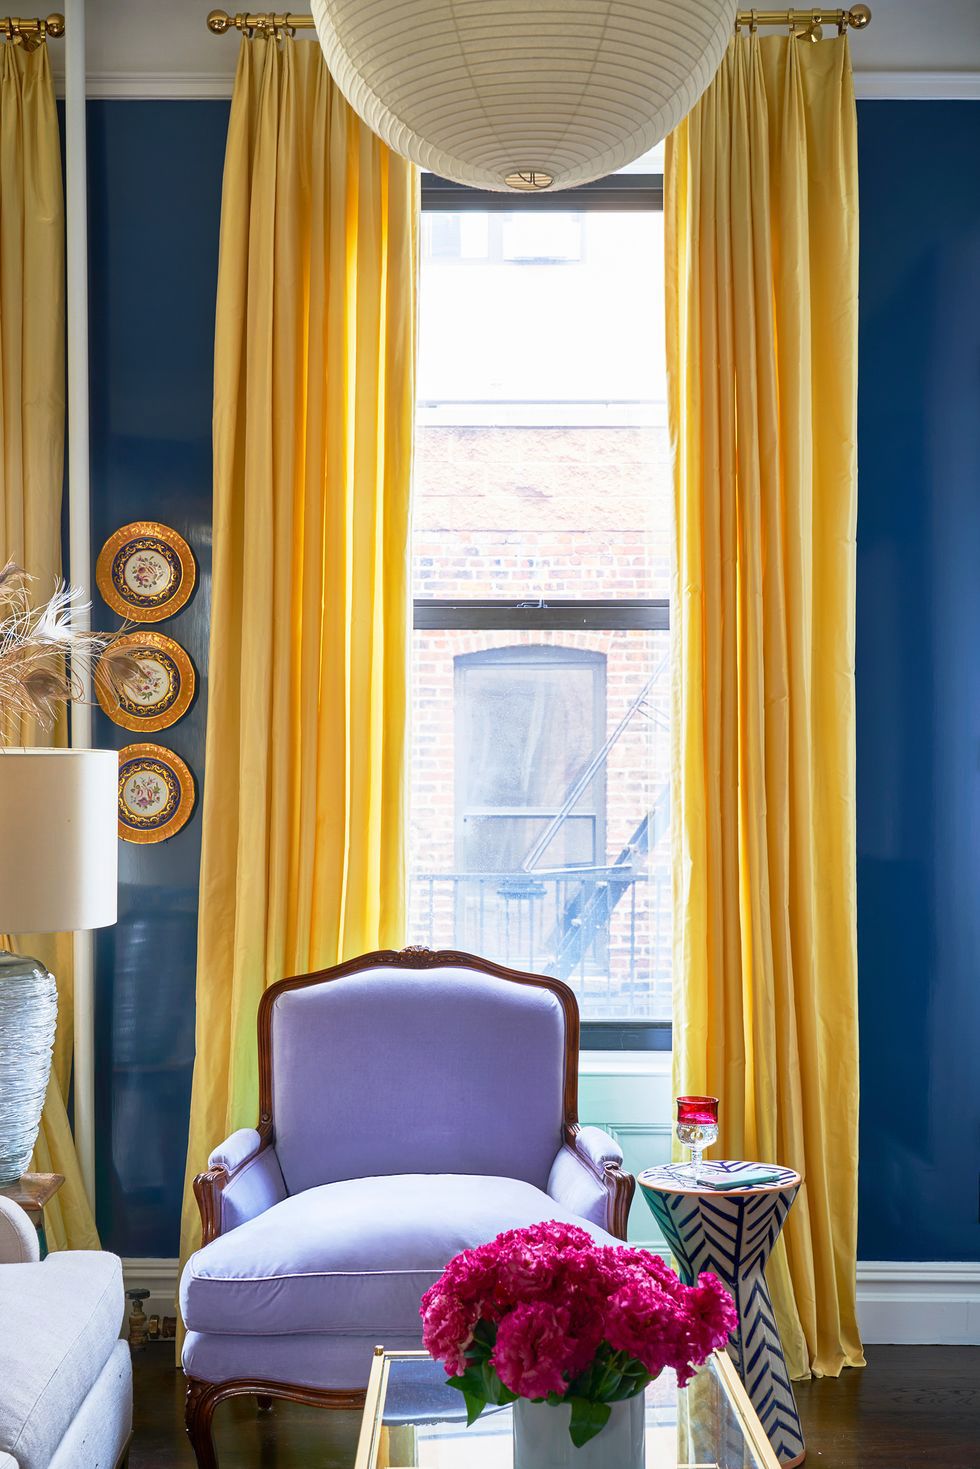 Hình ảnh một góc phòng khách nổi bật với ghế bành màu tím, rèm cửa vàng